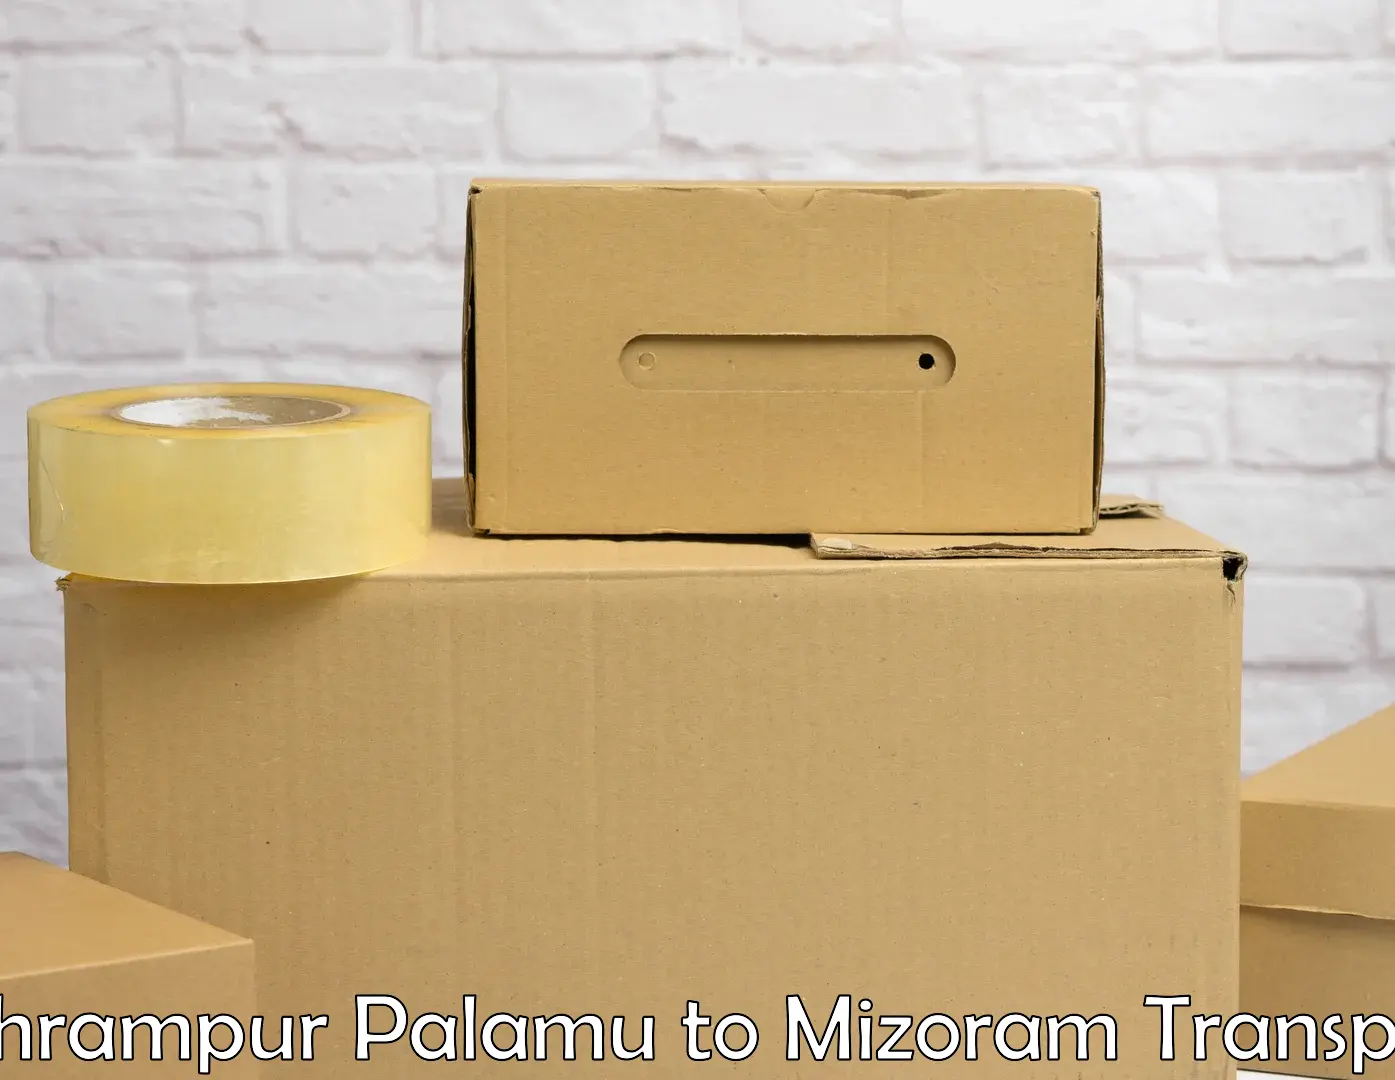 Online transport service Bishrampur Palamu to Mizoram University Aizawl